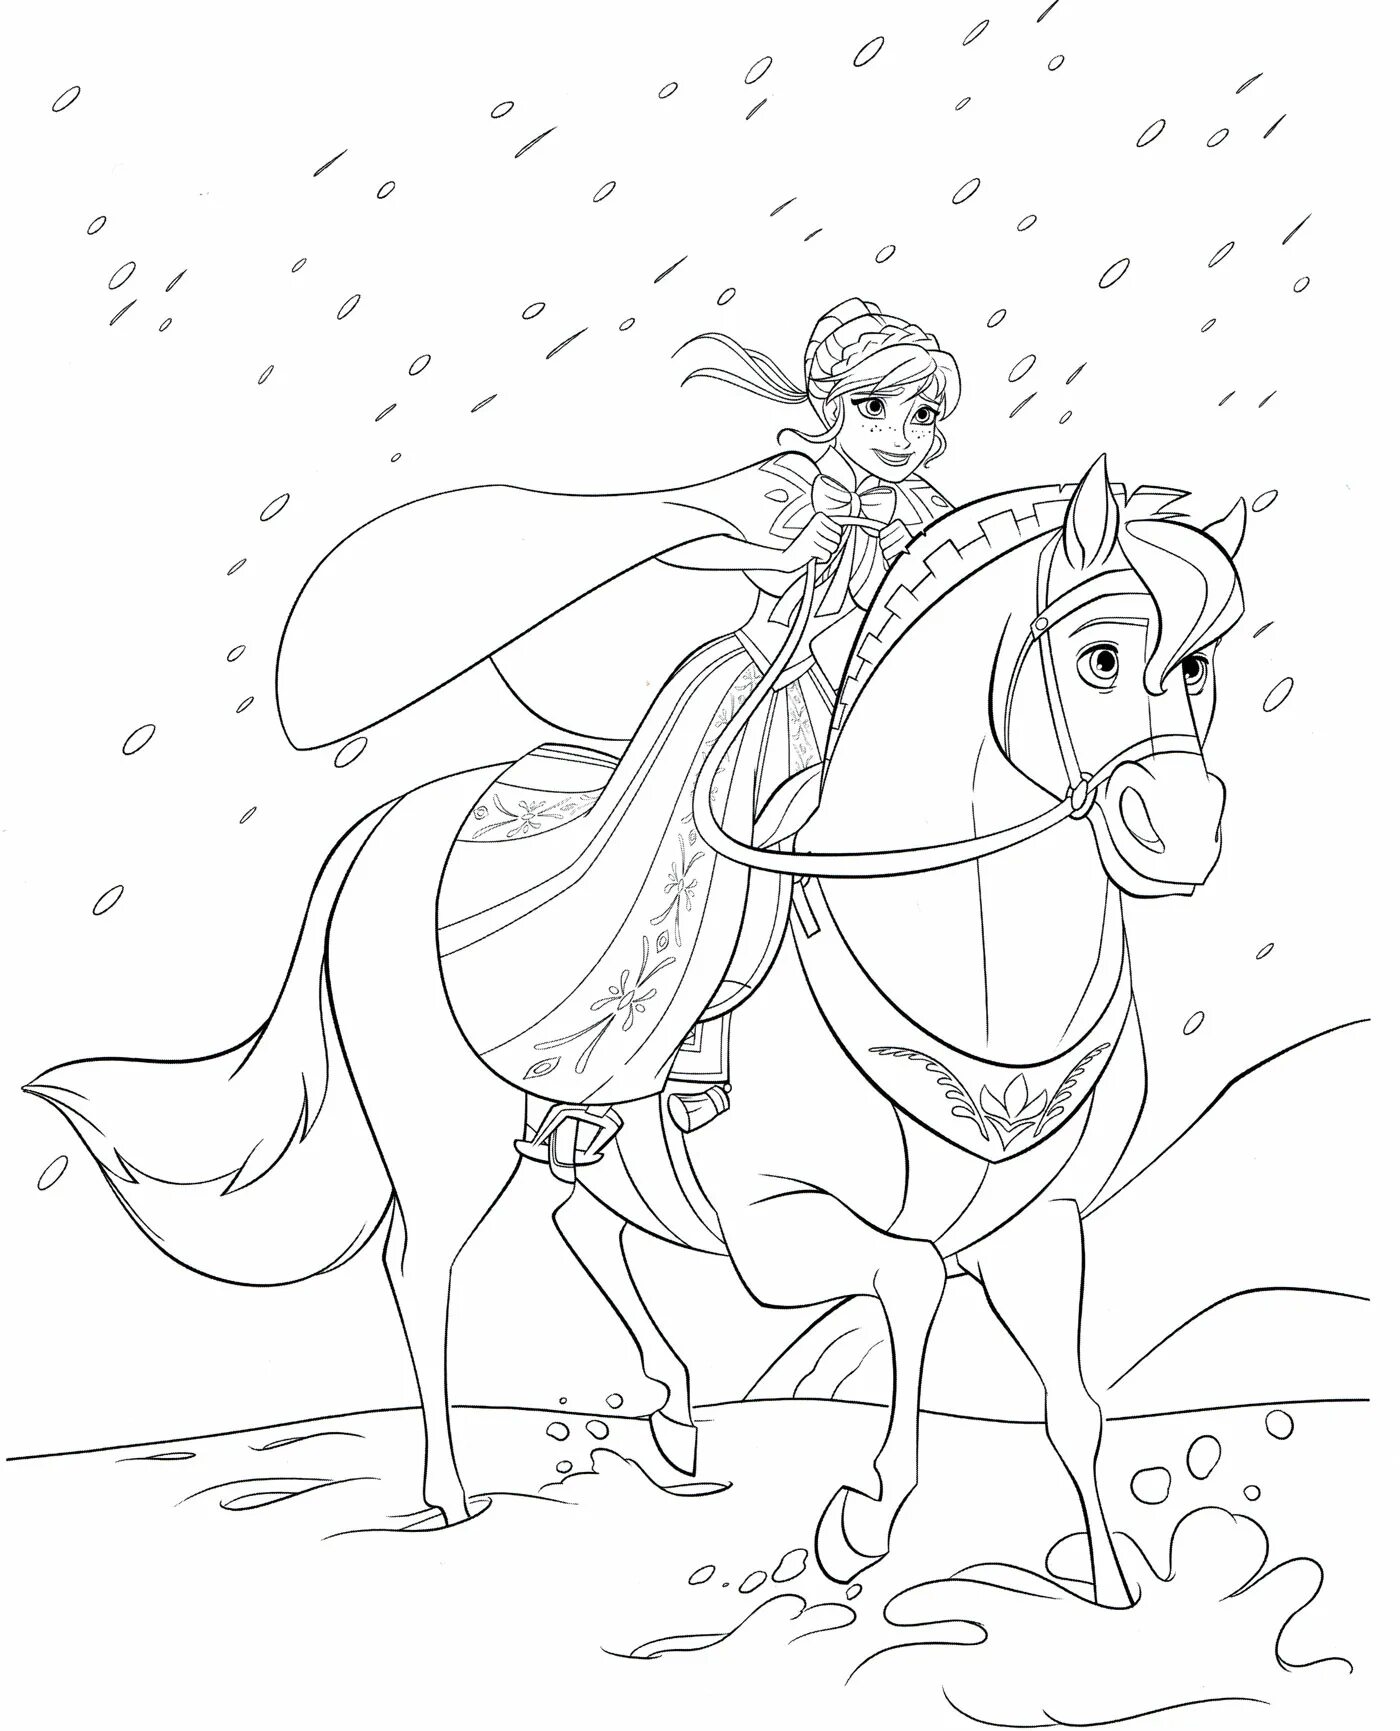 Elsa on a horse #13